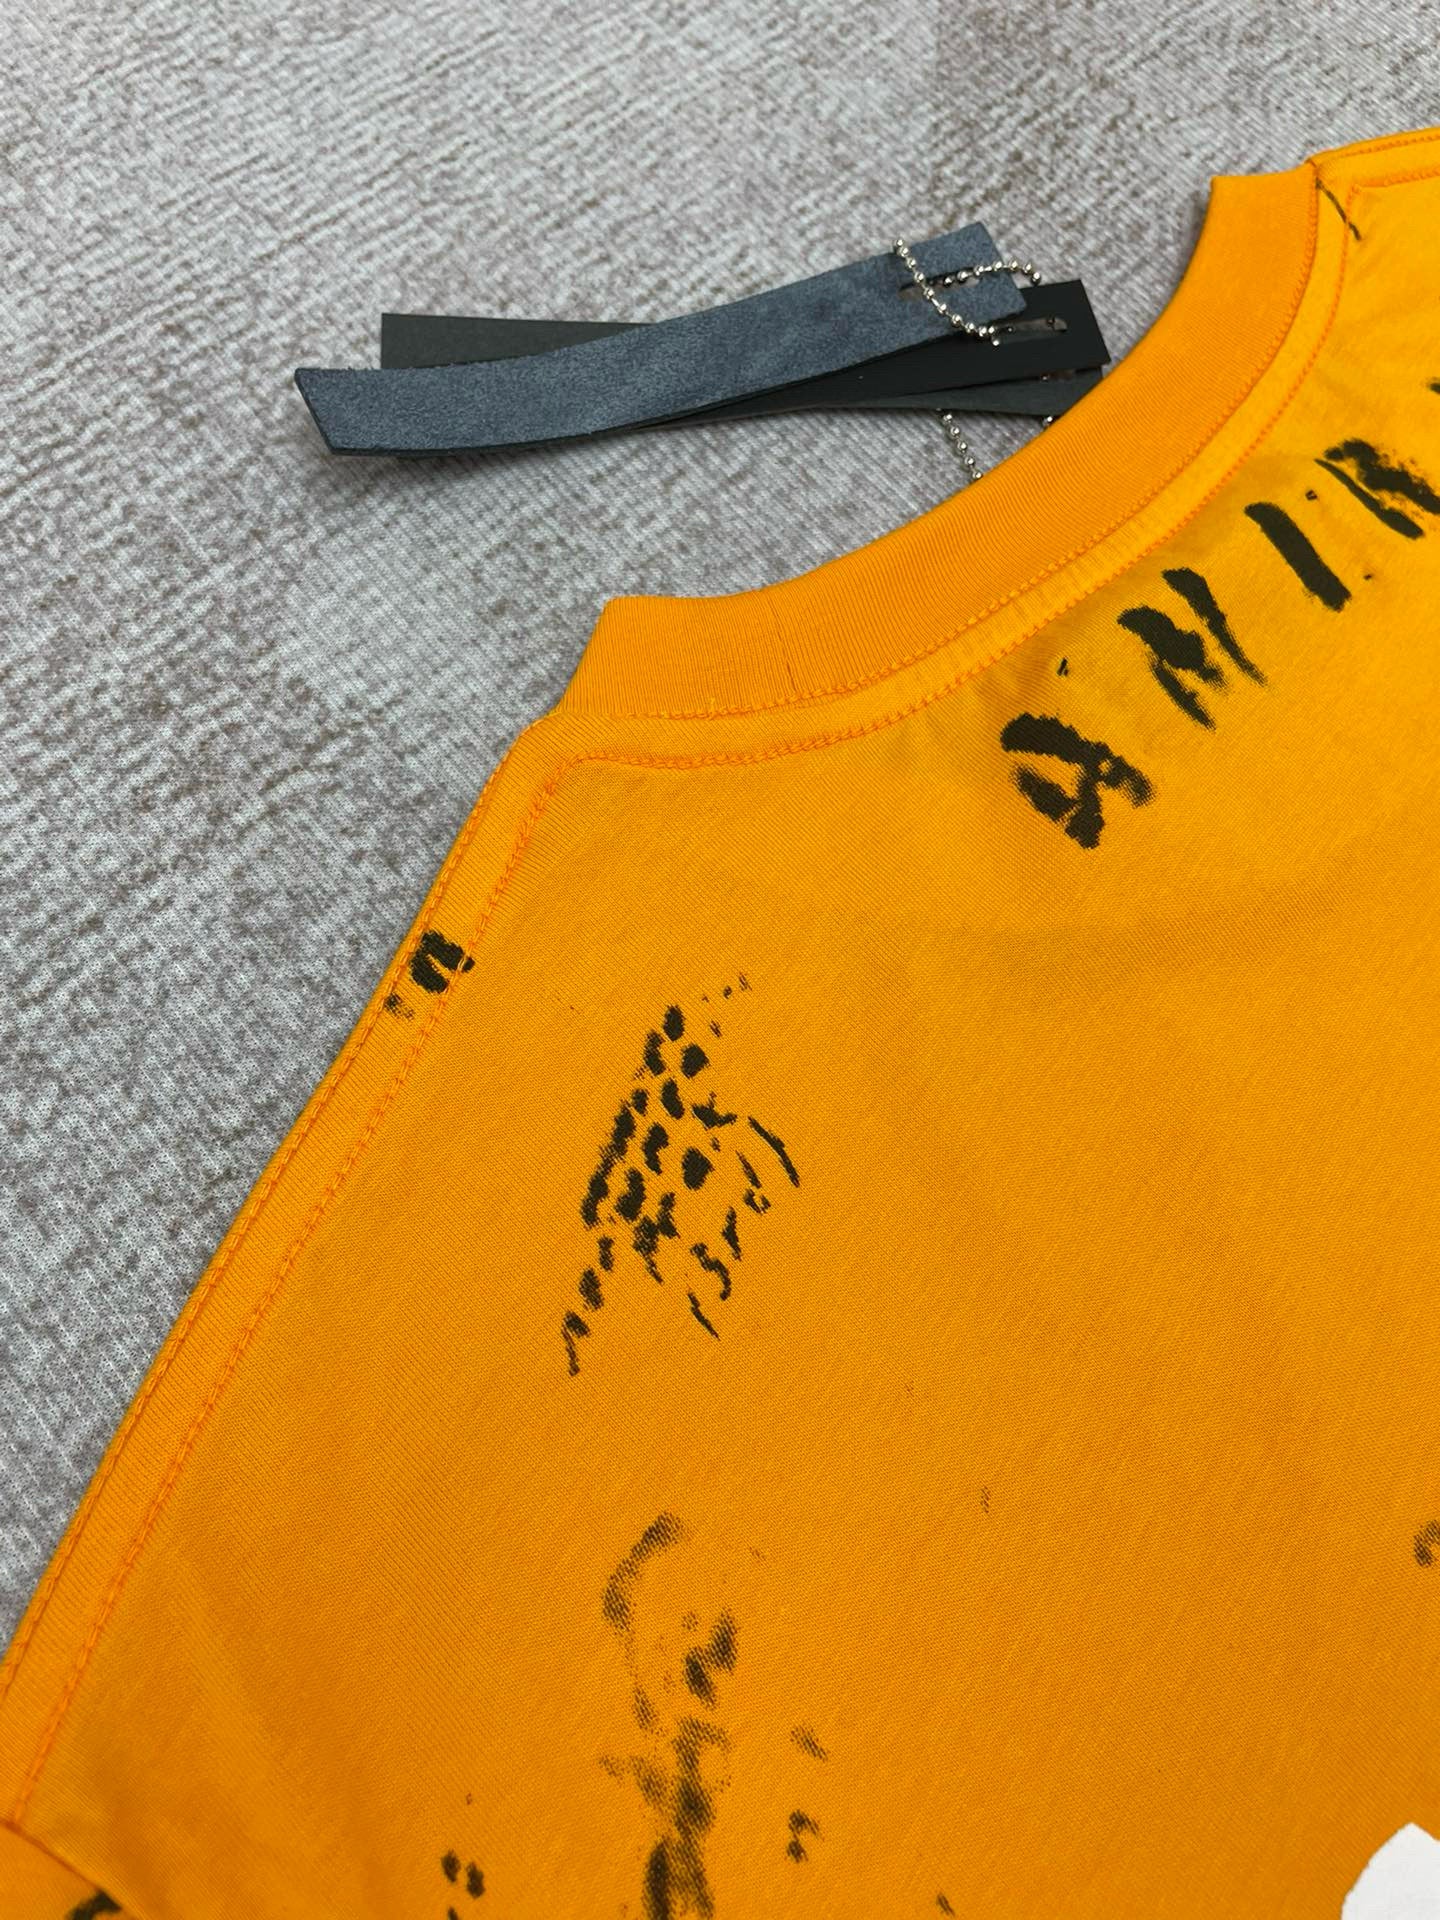 Orange and Yellow T-shirt